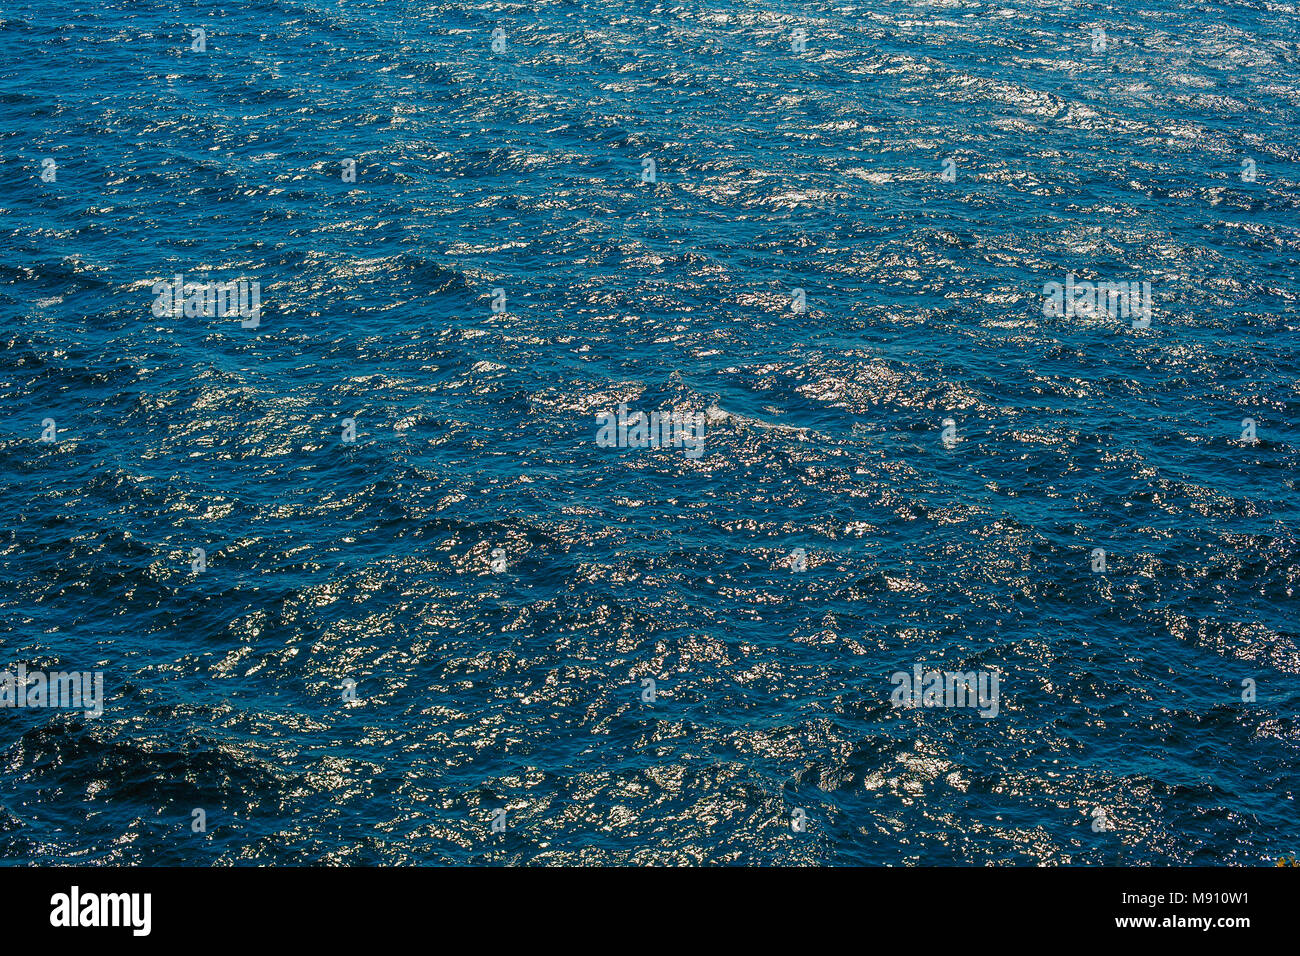 Formes de fractal organique dans l'ondulation des vagues sur le bleu profond de la mer Adriatique en raison de ciel bleu et étincelant au soleil comme le lapis-lazuli crystal Banque D'Images